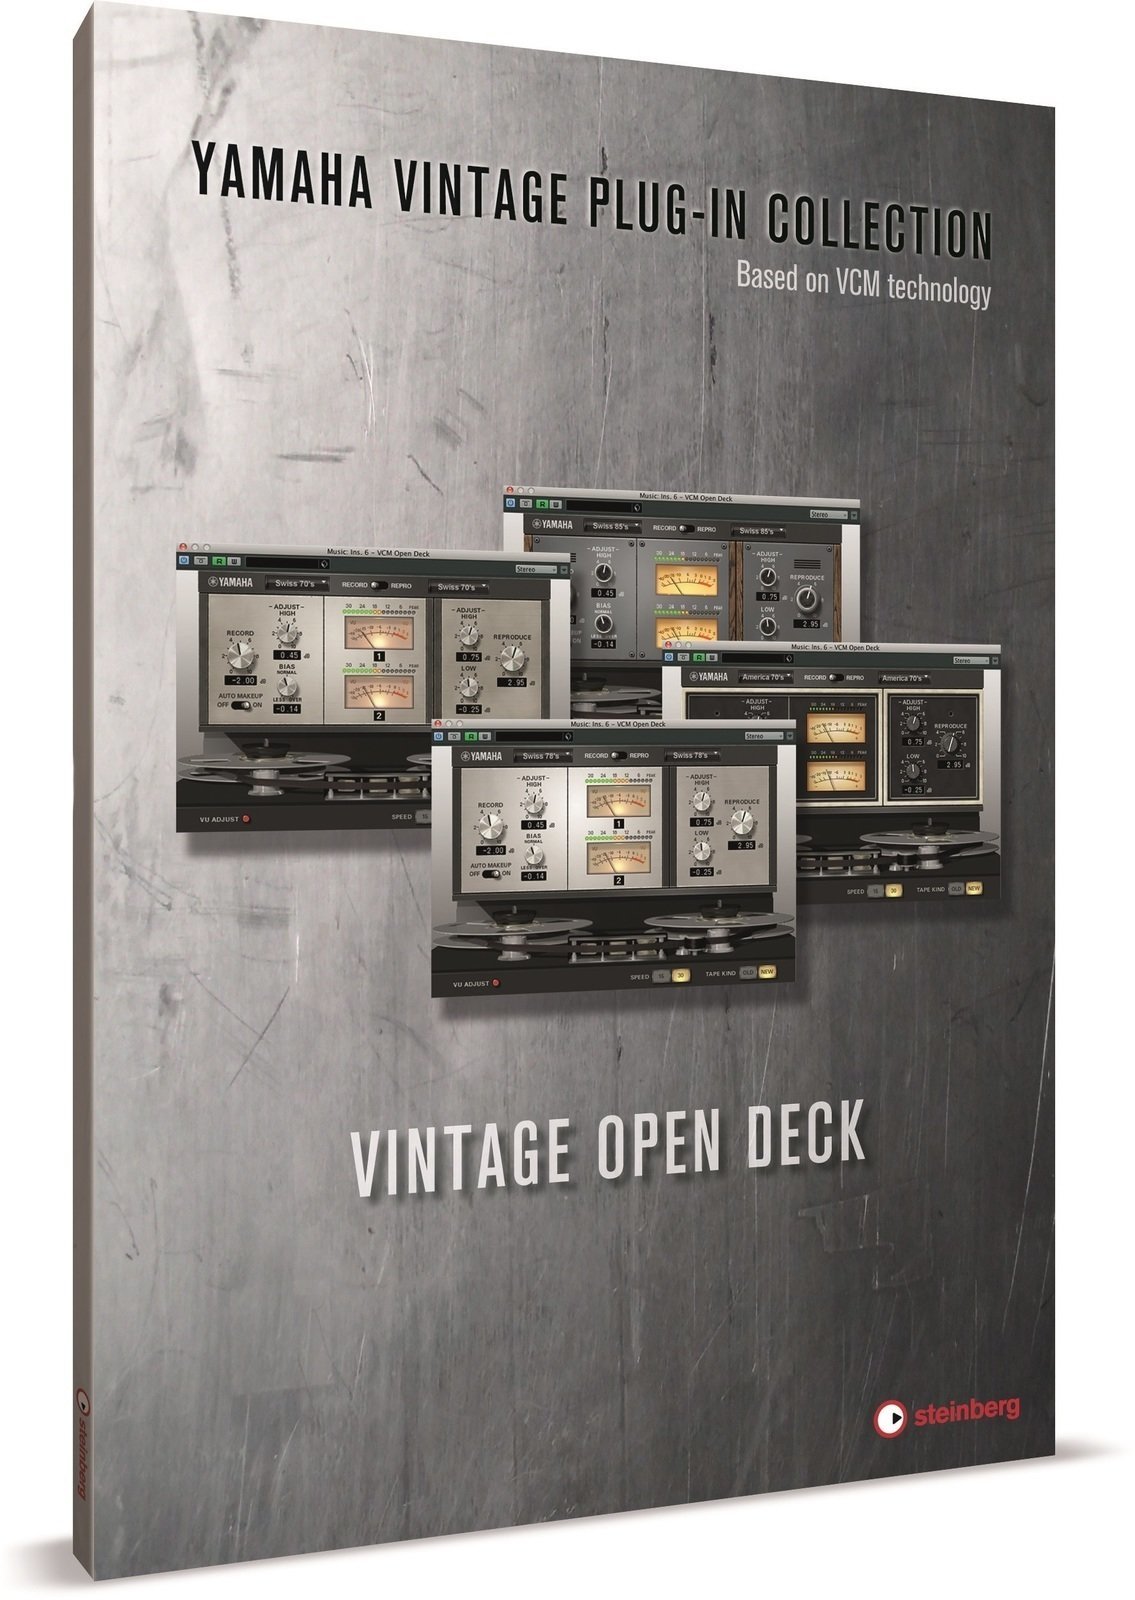 Software de estudio Steinberg Vintage Open Deck